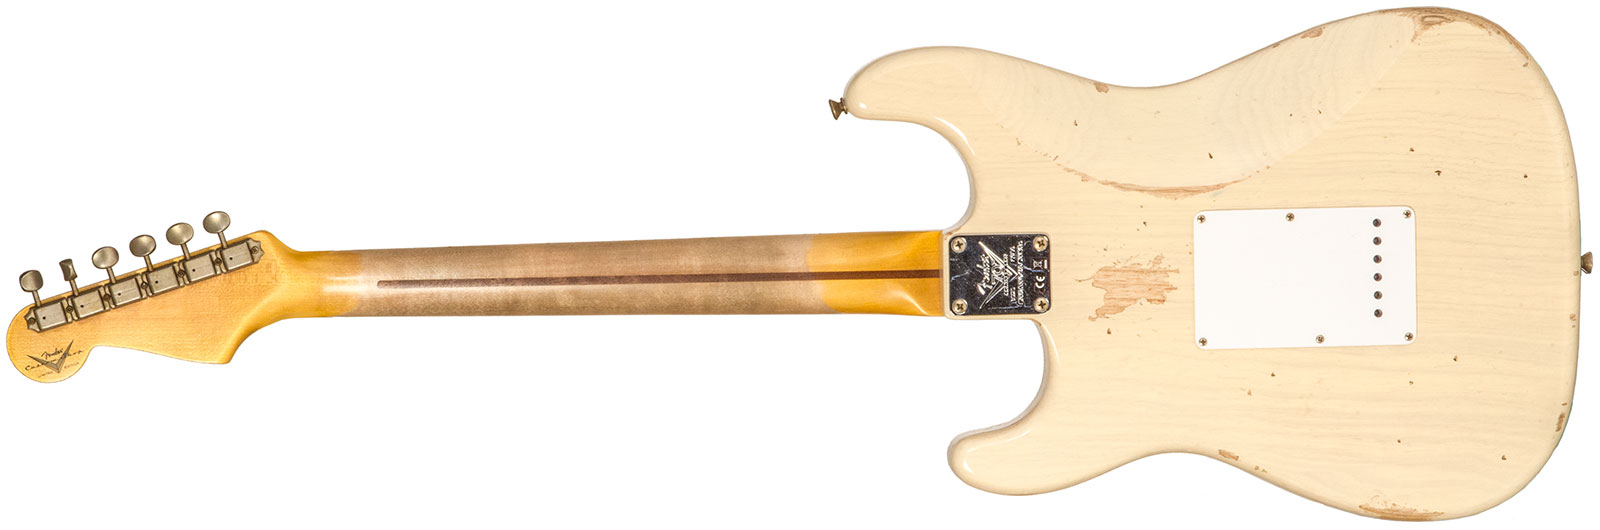 Fender Custom Shop Strat 1954 70th Anniv. 3s Trem Mn #xn4342 - Relic Vintage Blonde - Guitare Électrique Forme Str - Variation 1